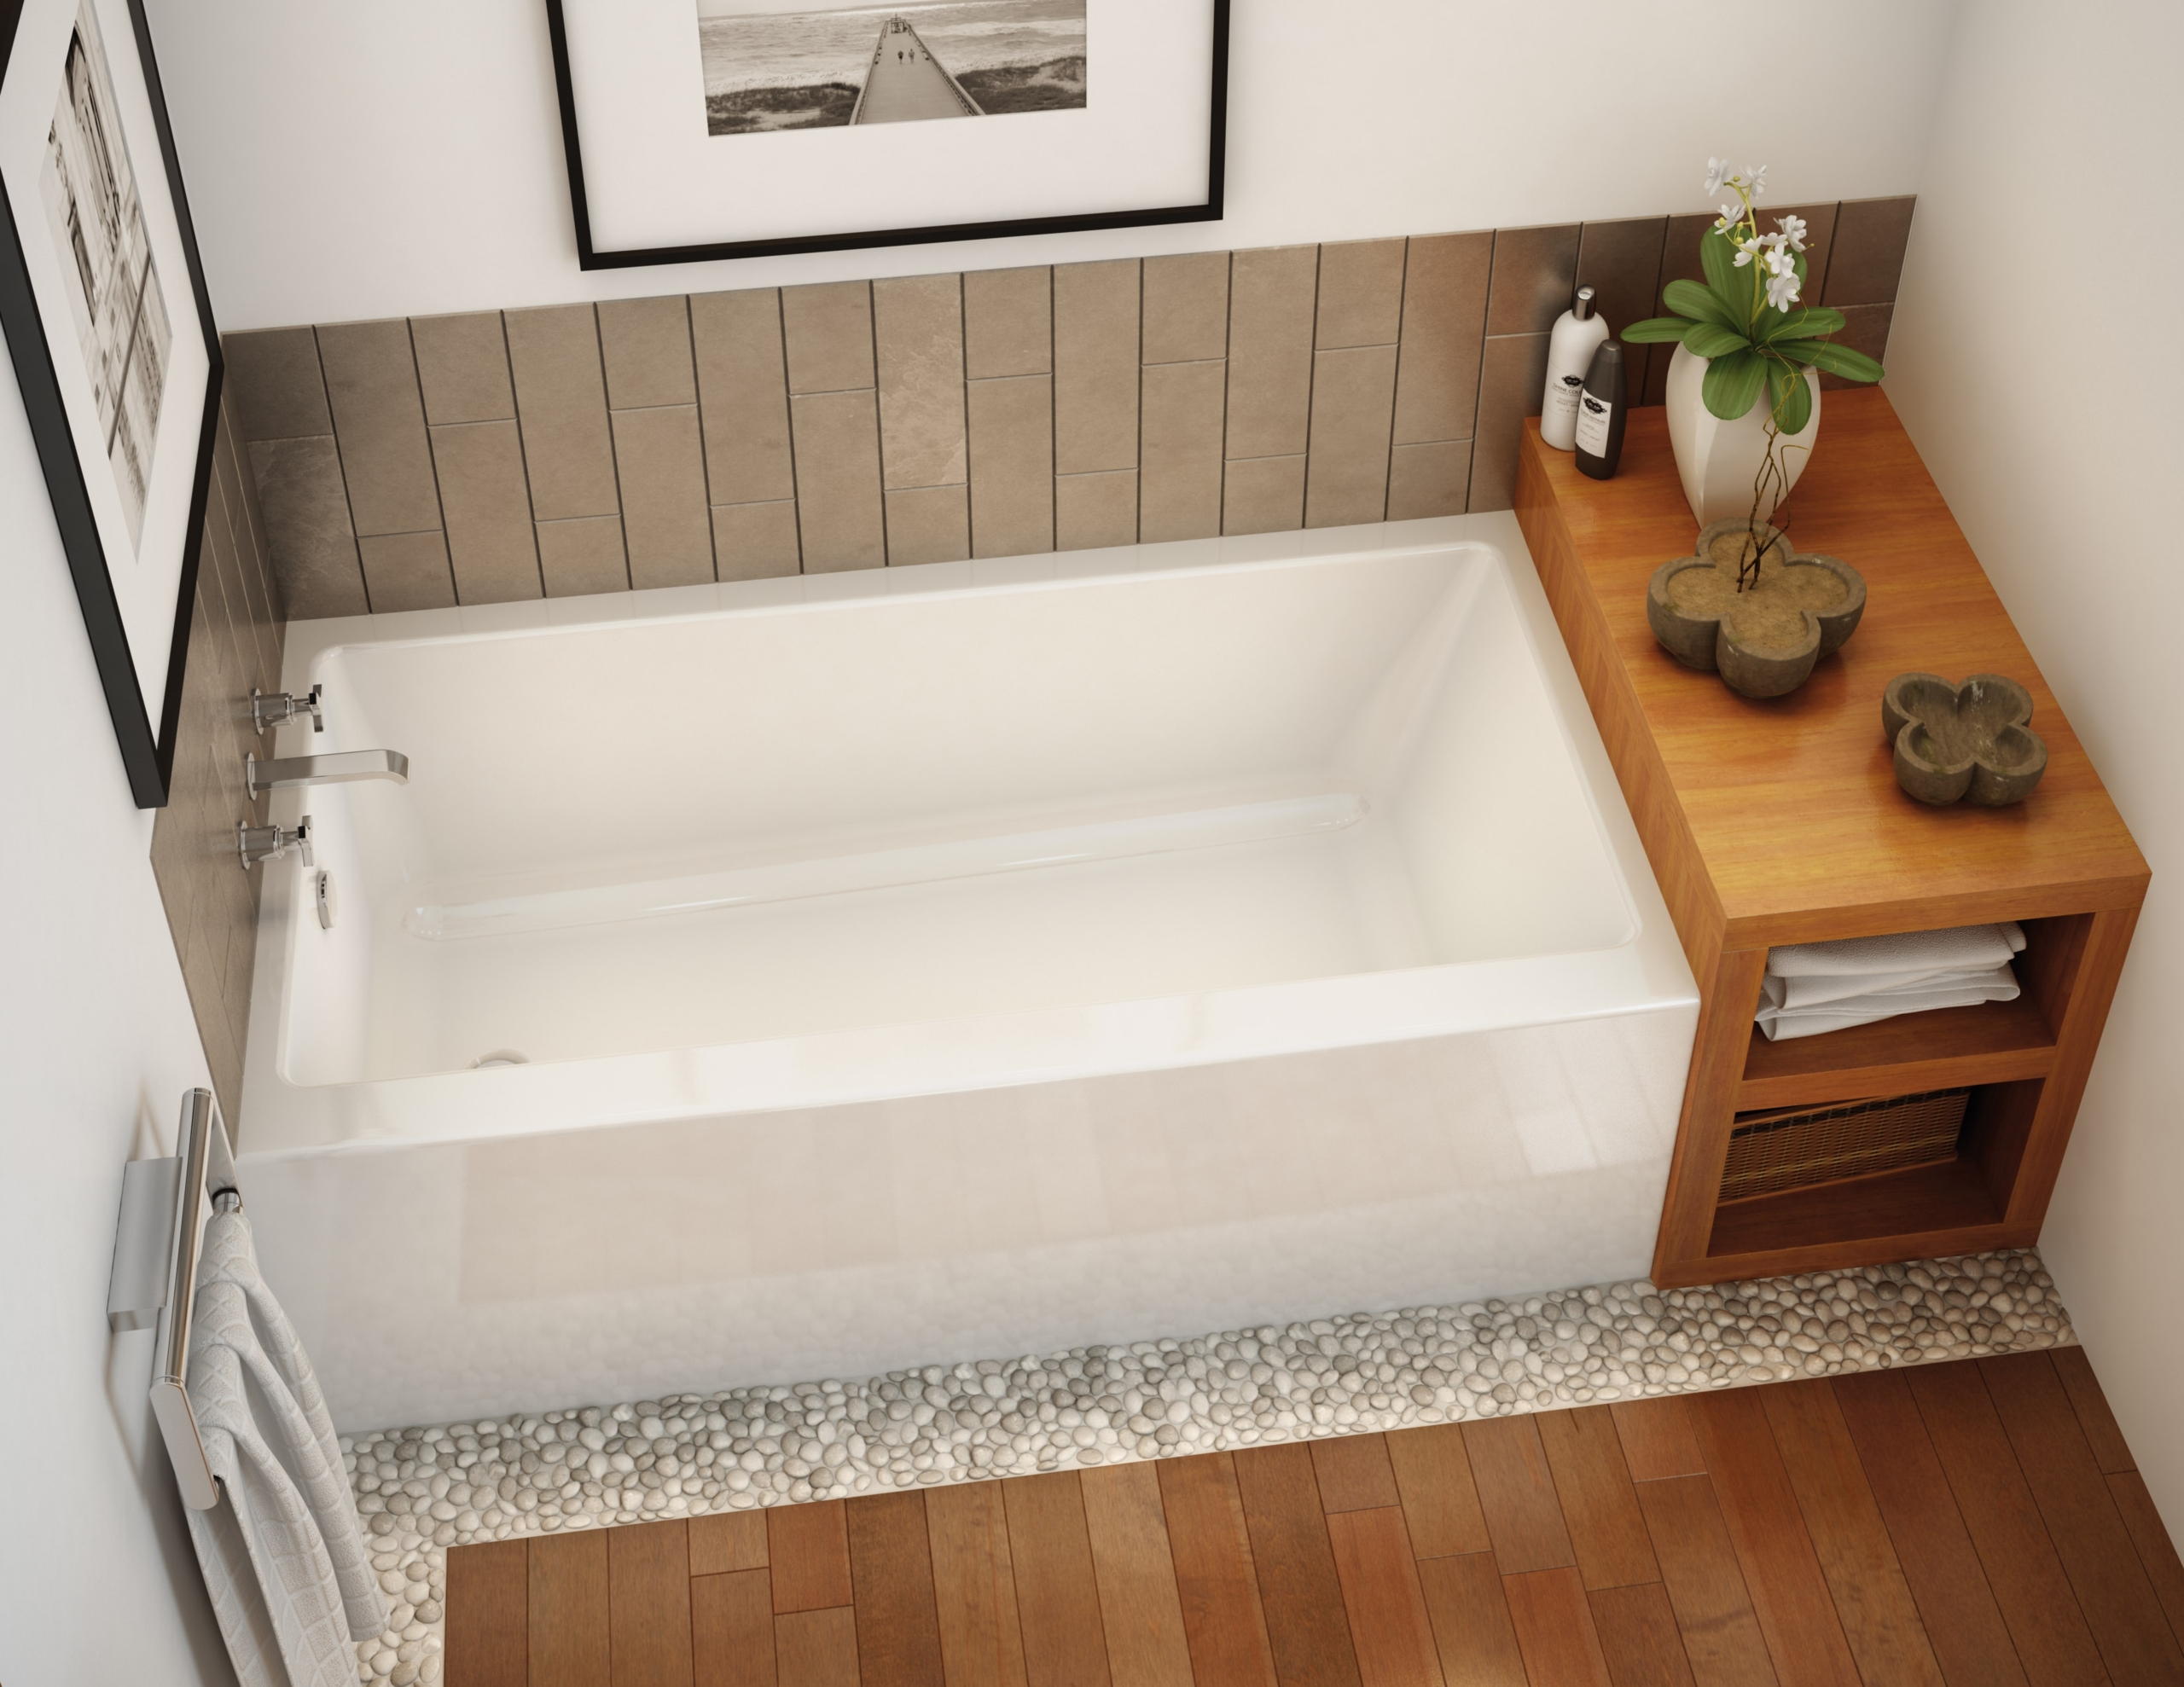 Extra wide bathtub 17